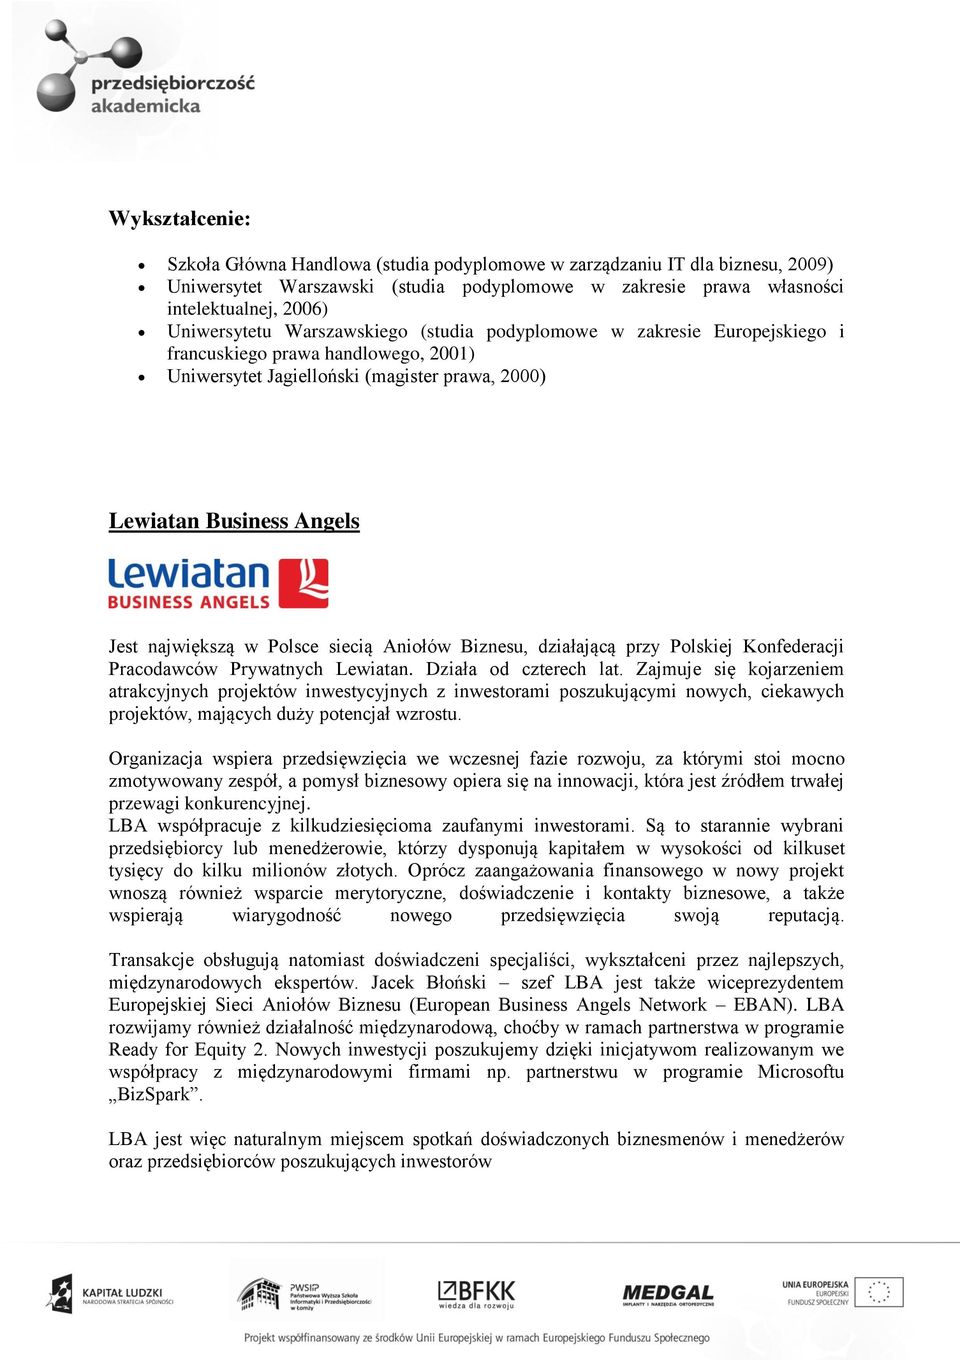 siecią Aniołów Biznesu, działającą przy Polskiej Konfederacji Pracodawców Prywatnych Lewiatan. Działa od czterech lat.